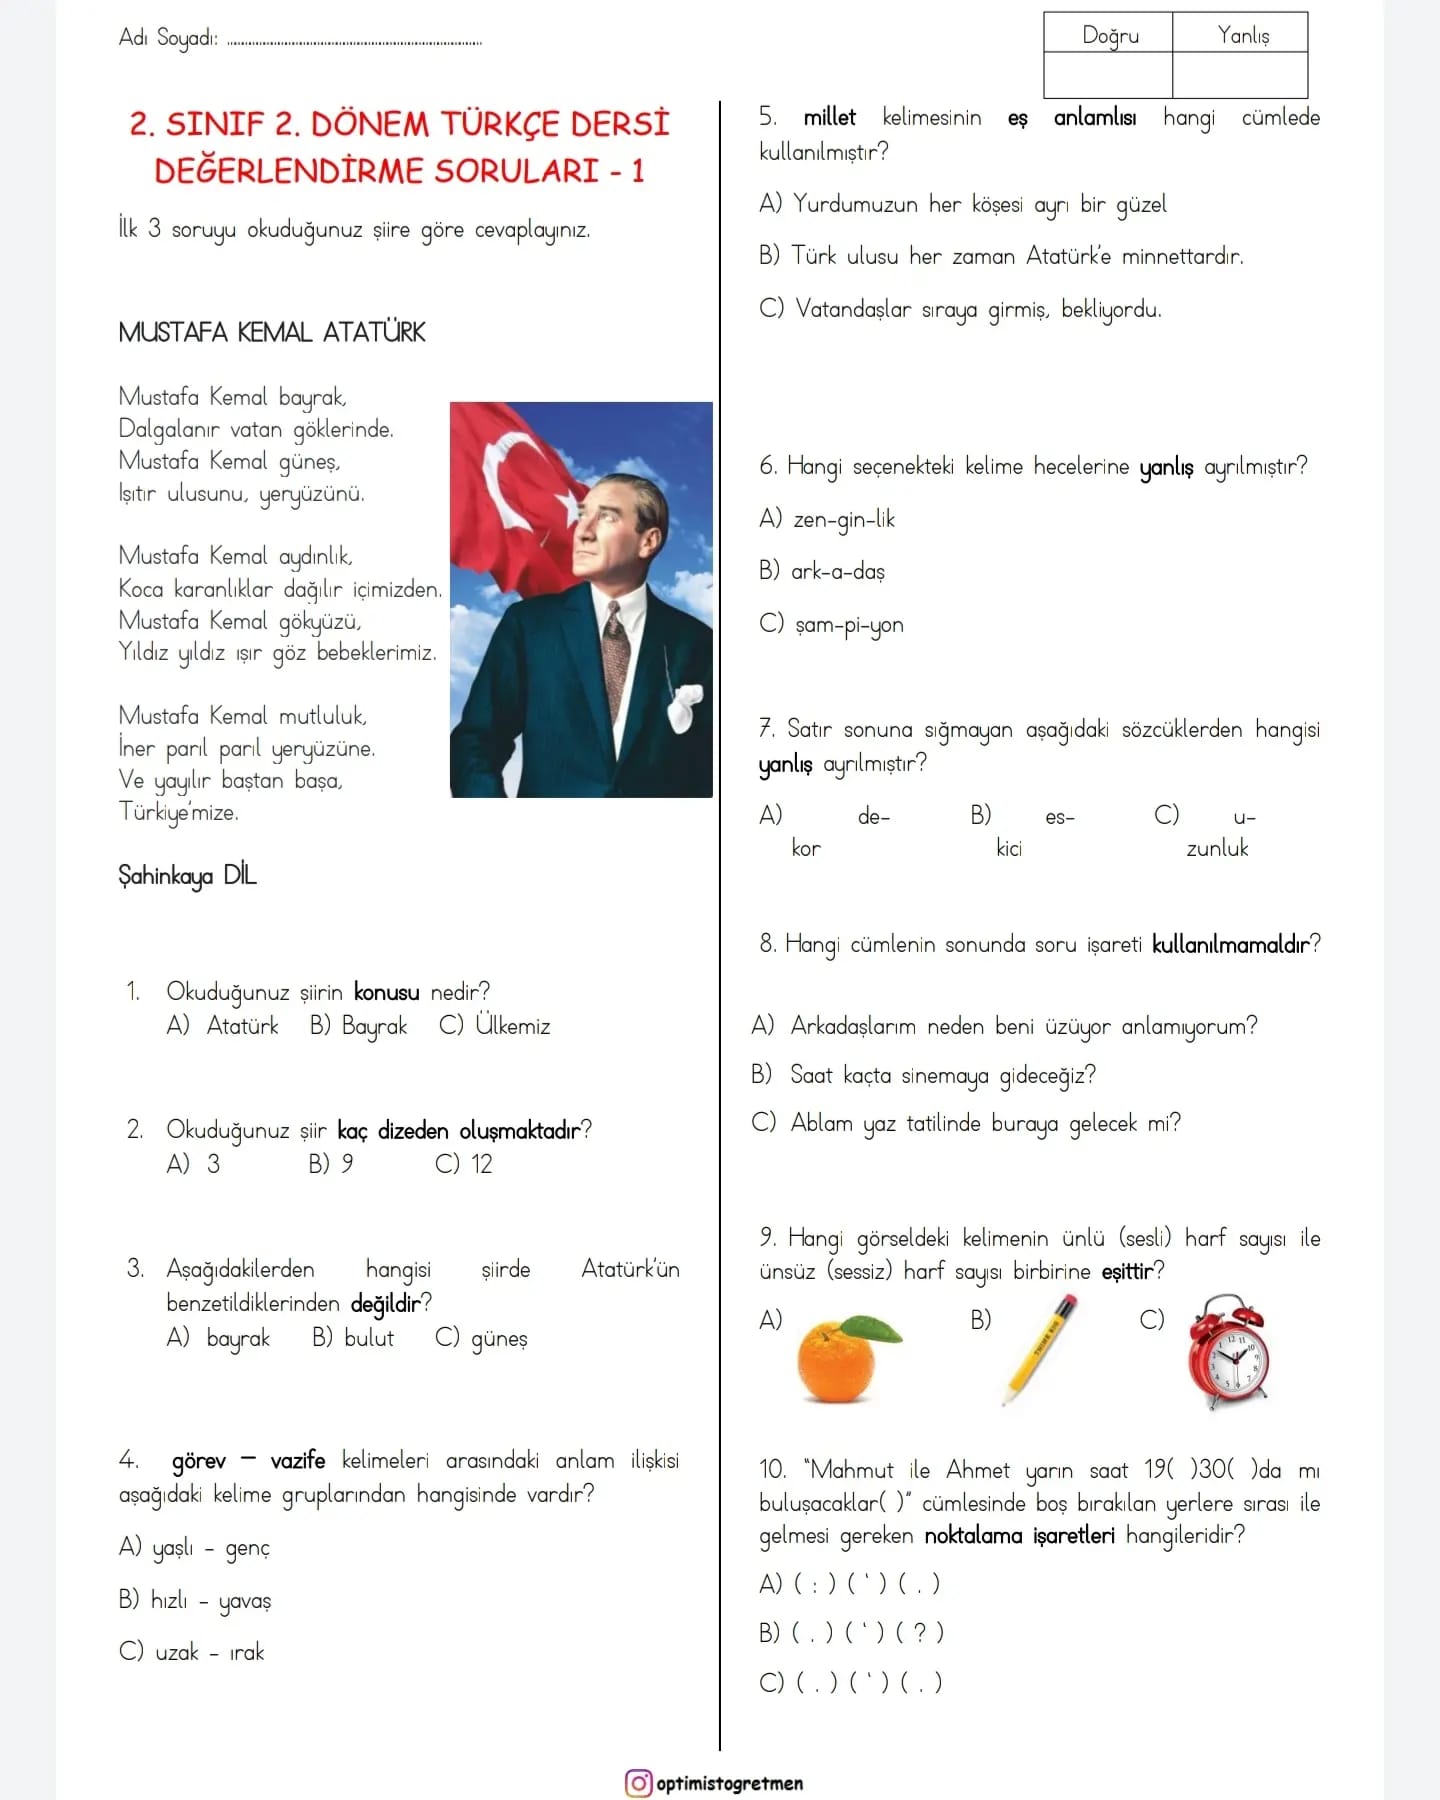 2. Sınıf 2. Dönem Türkçe Değerlendirme Sınavı - 1 (20 Soru)